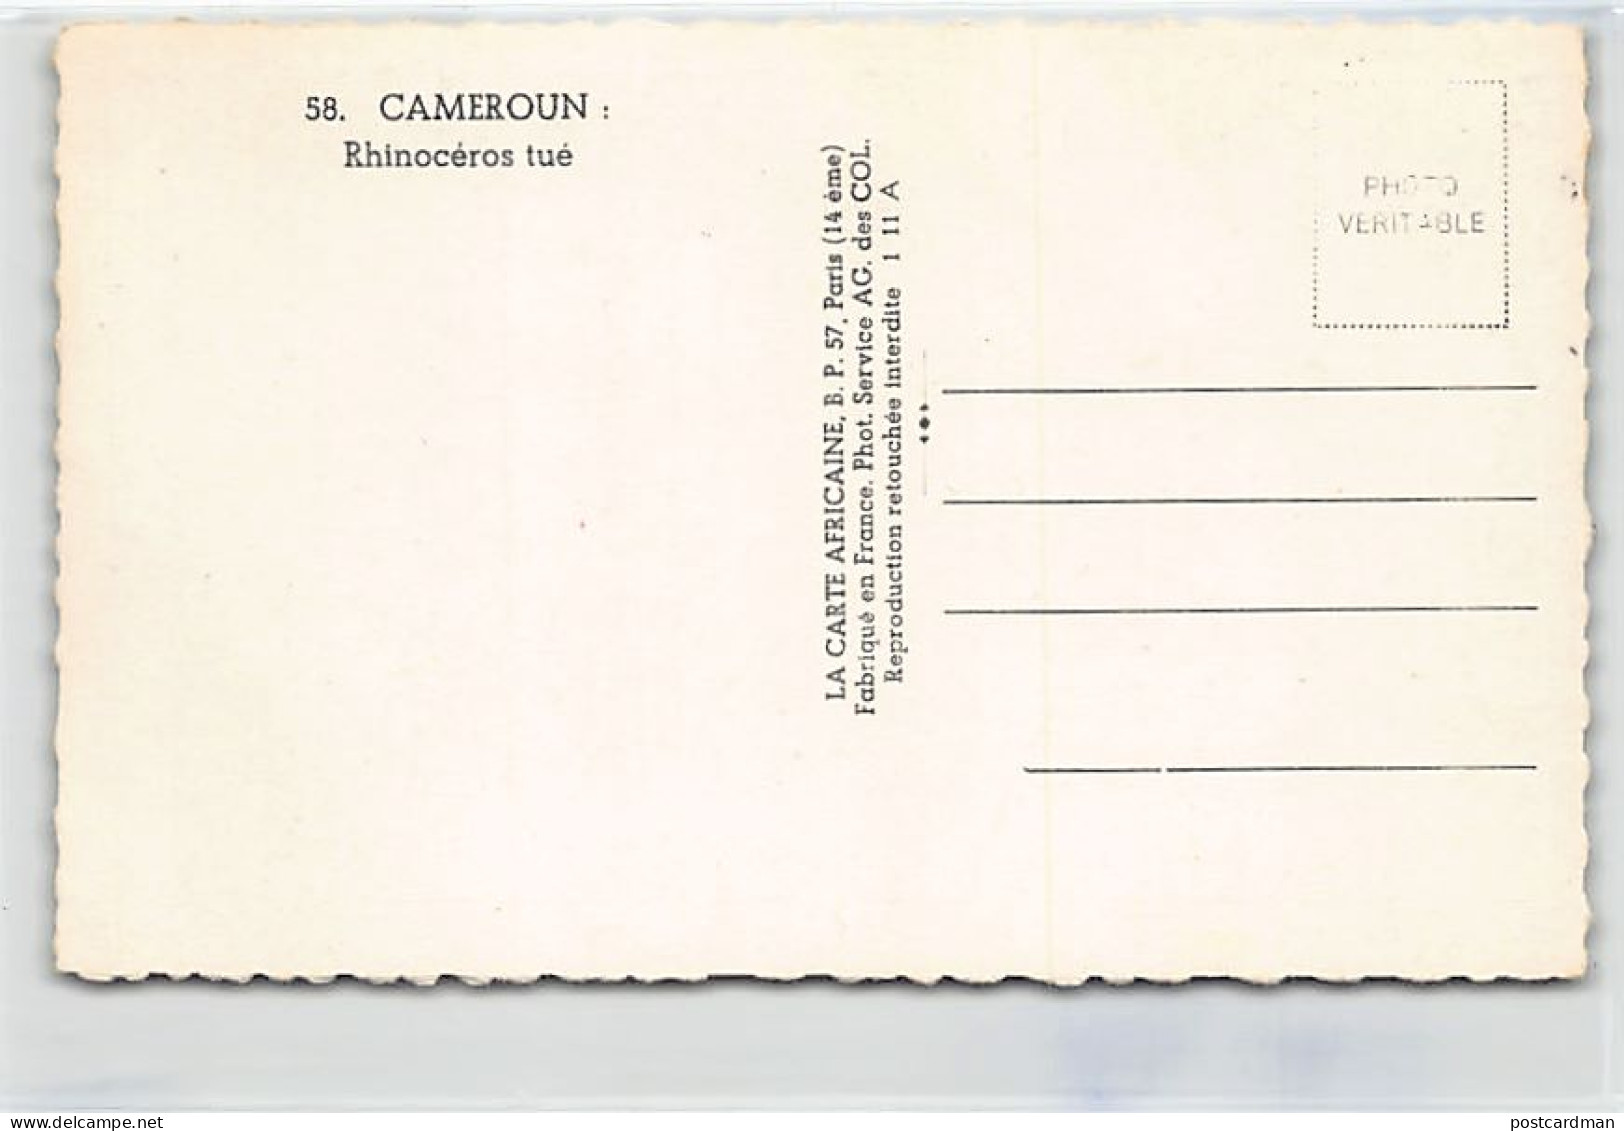 Cameroun - Rhinocéros Tué - Ed. La Carte Africaine 58 - Kameroen